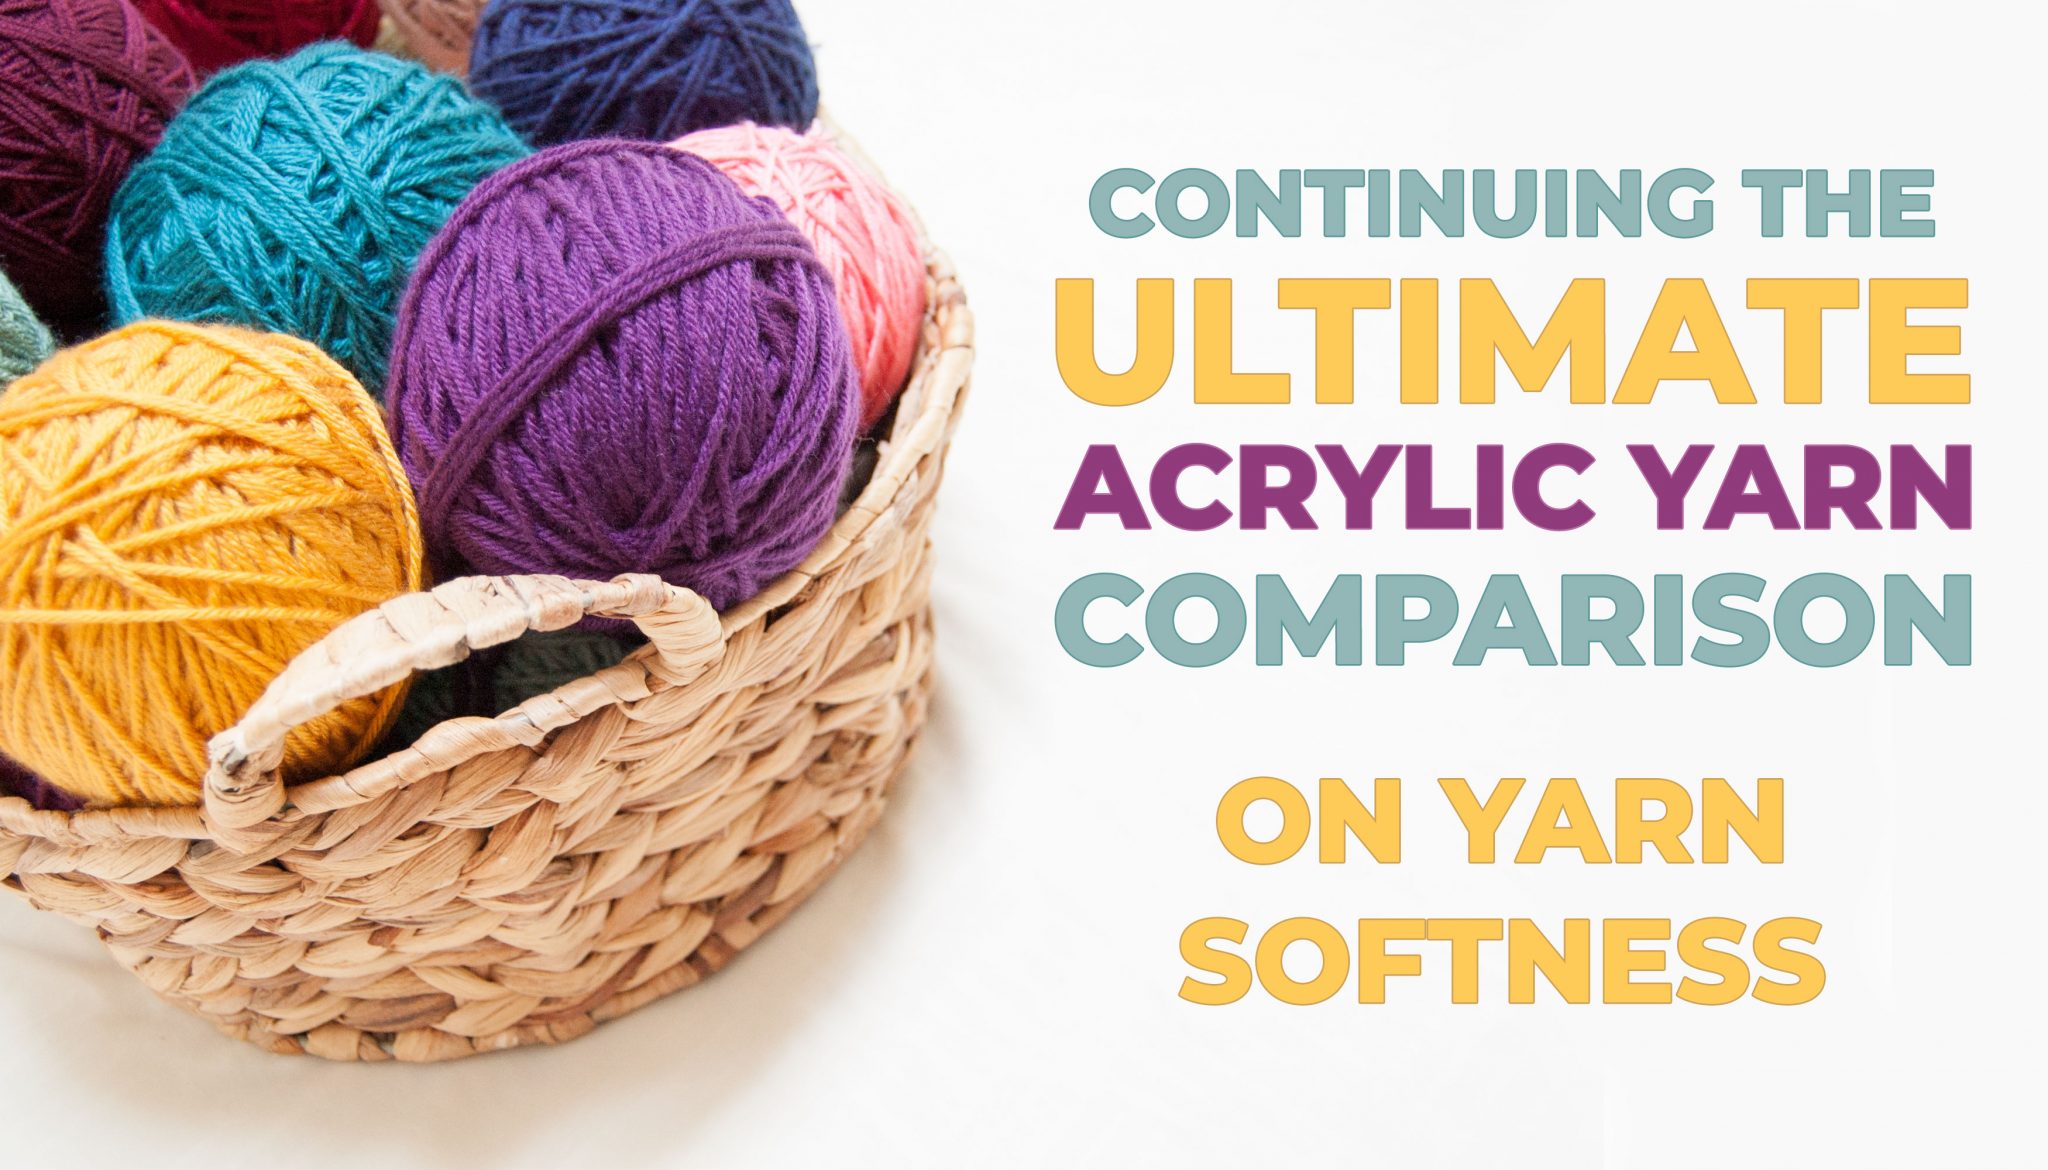 Softest Yarn Ranking - Ultimate Acrylic Yarn Comparison - Budget Yarn  Reviews